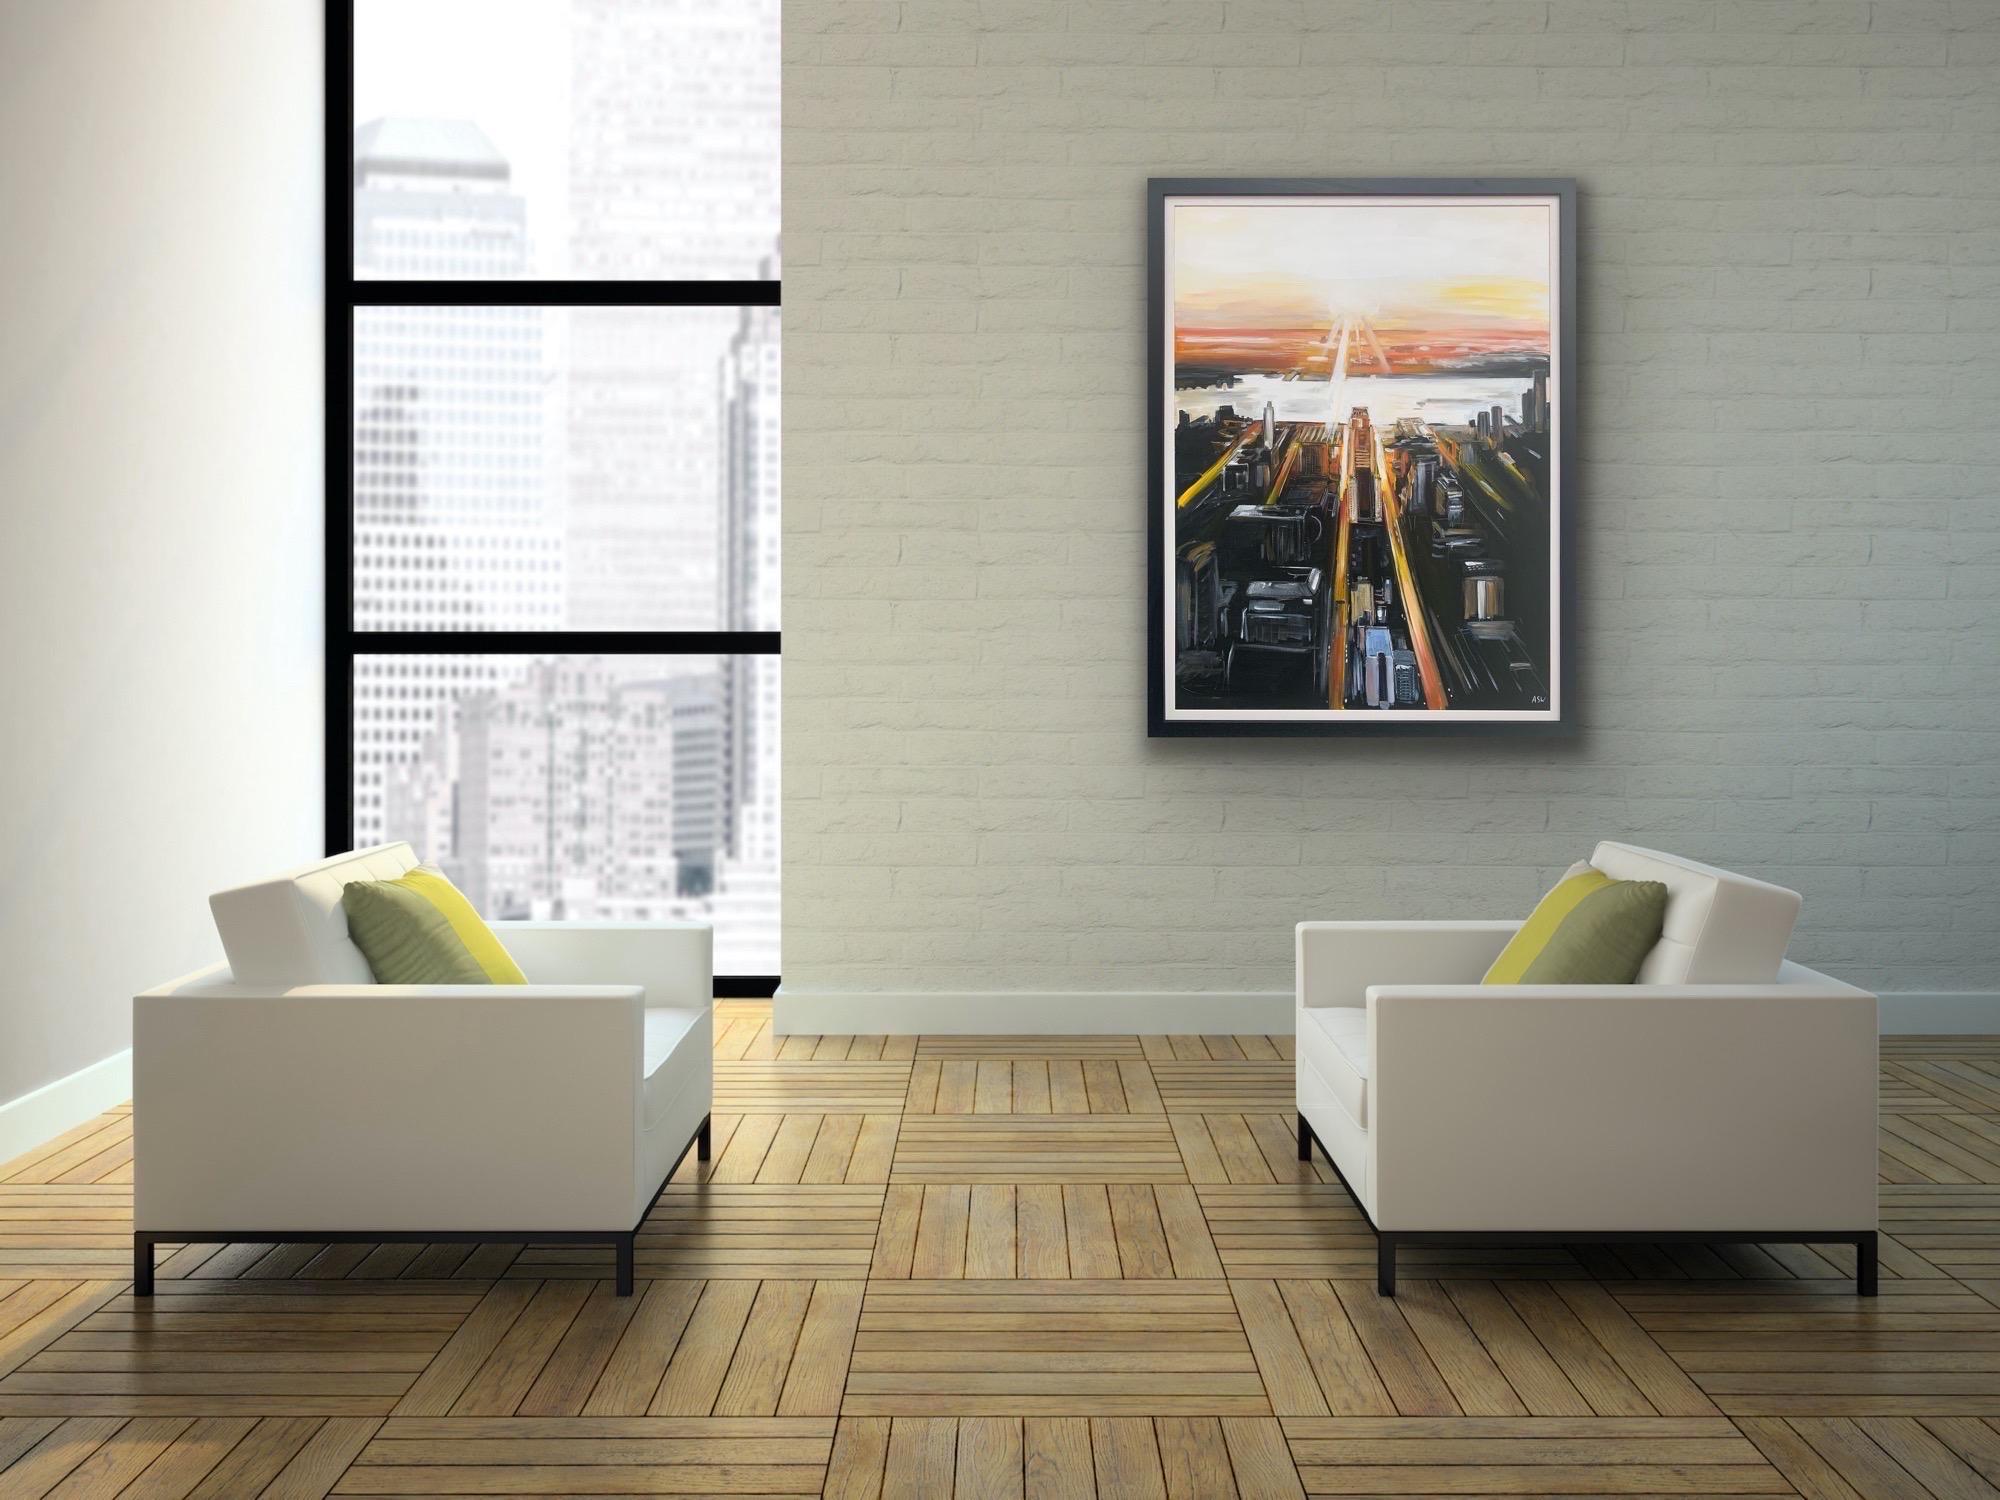 Peinture de paysage abstrait représentant une vue aérienne de l'île de Manhattan, New York, par l'artiste anglaise Angela Wakefield. Cet original est une représentation picturale et expressive d'une vue élevée de l'île de Manhattan, avec des coups